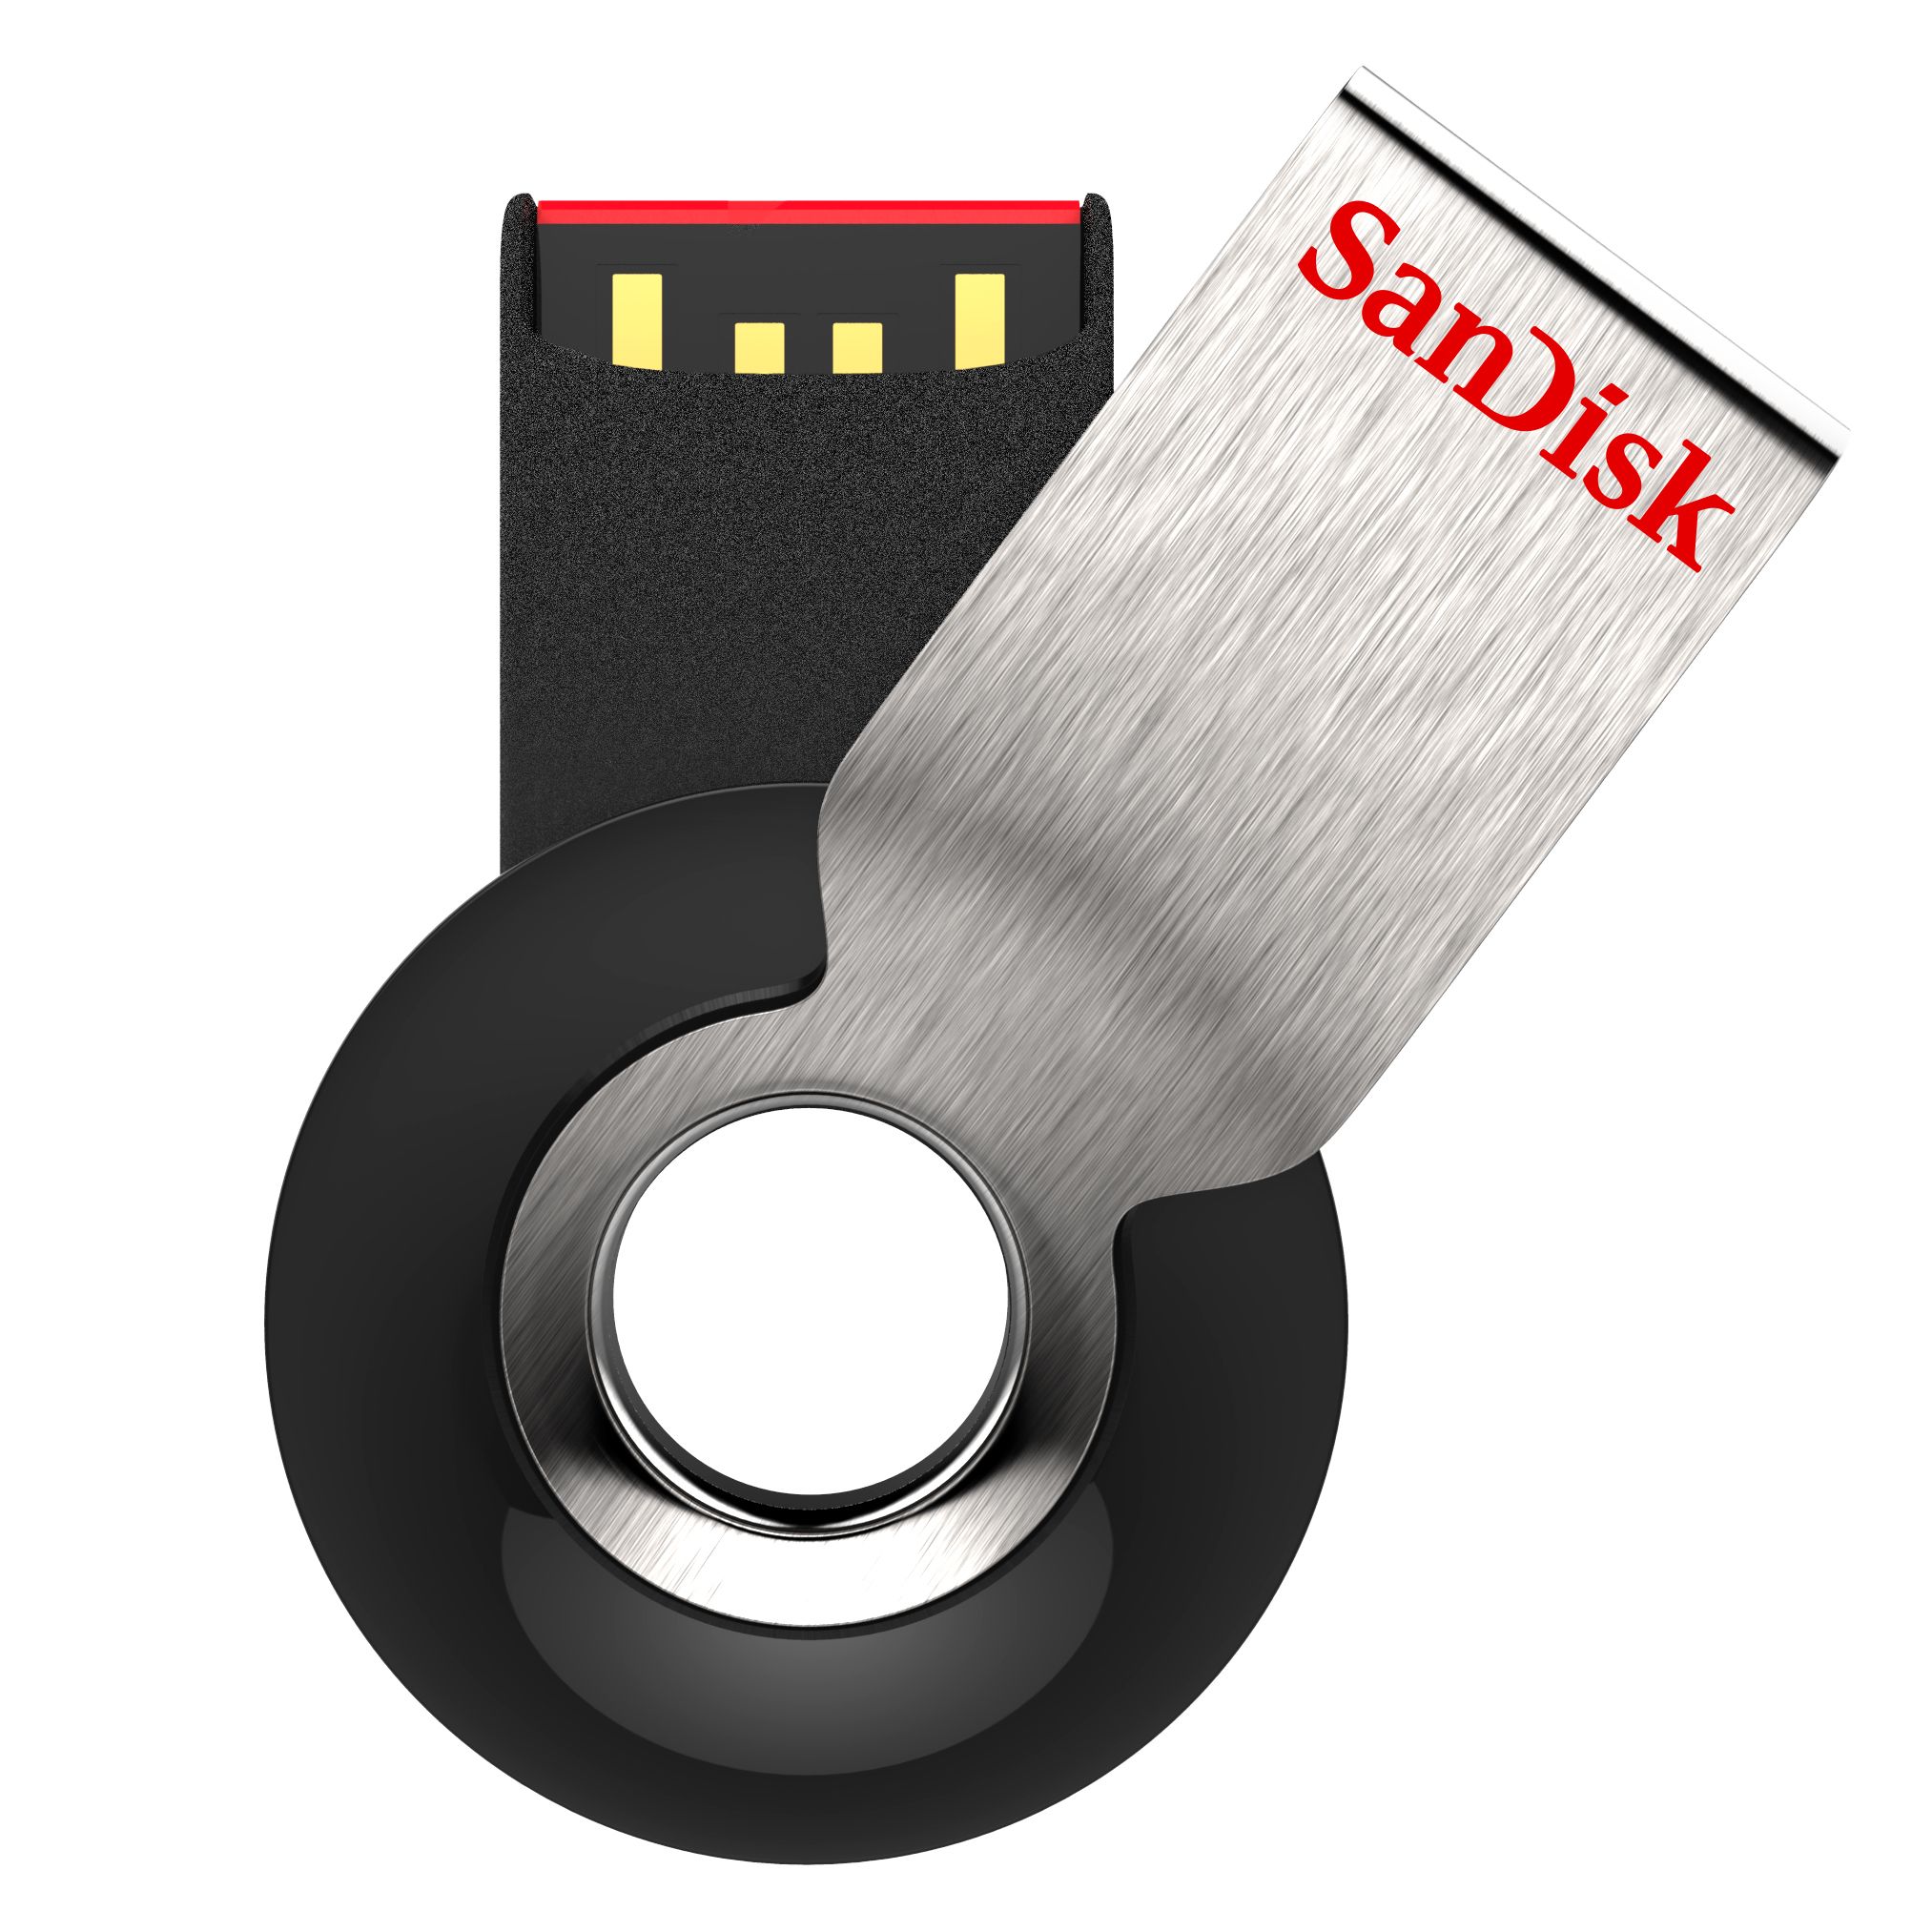 SanDisk Cruzer Orbit USB Flash Drive - 8GB